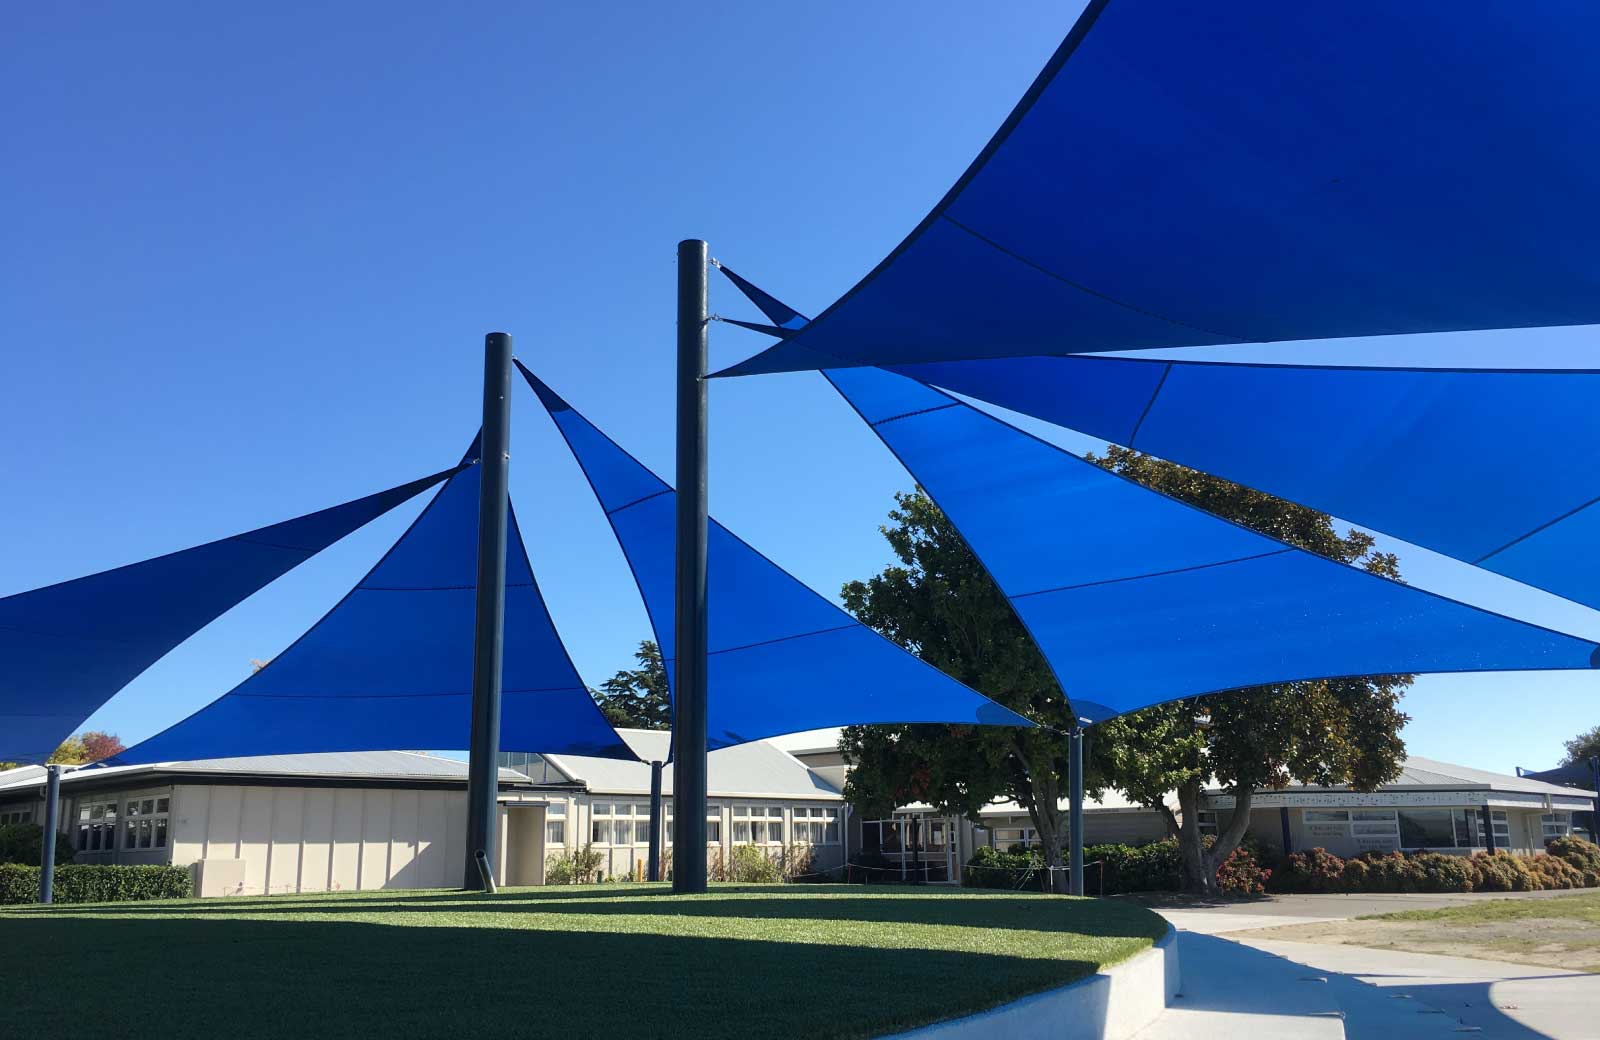 Shade sails providing shade for students at Taradale High School